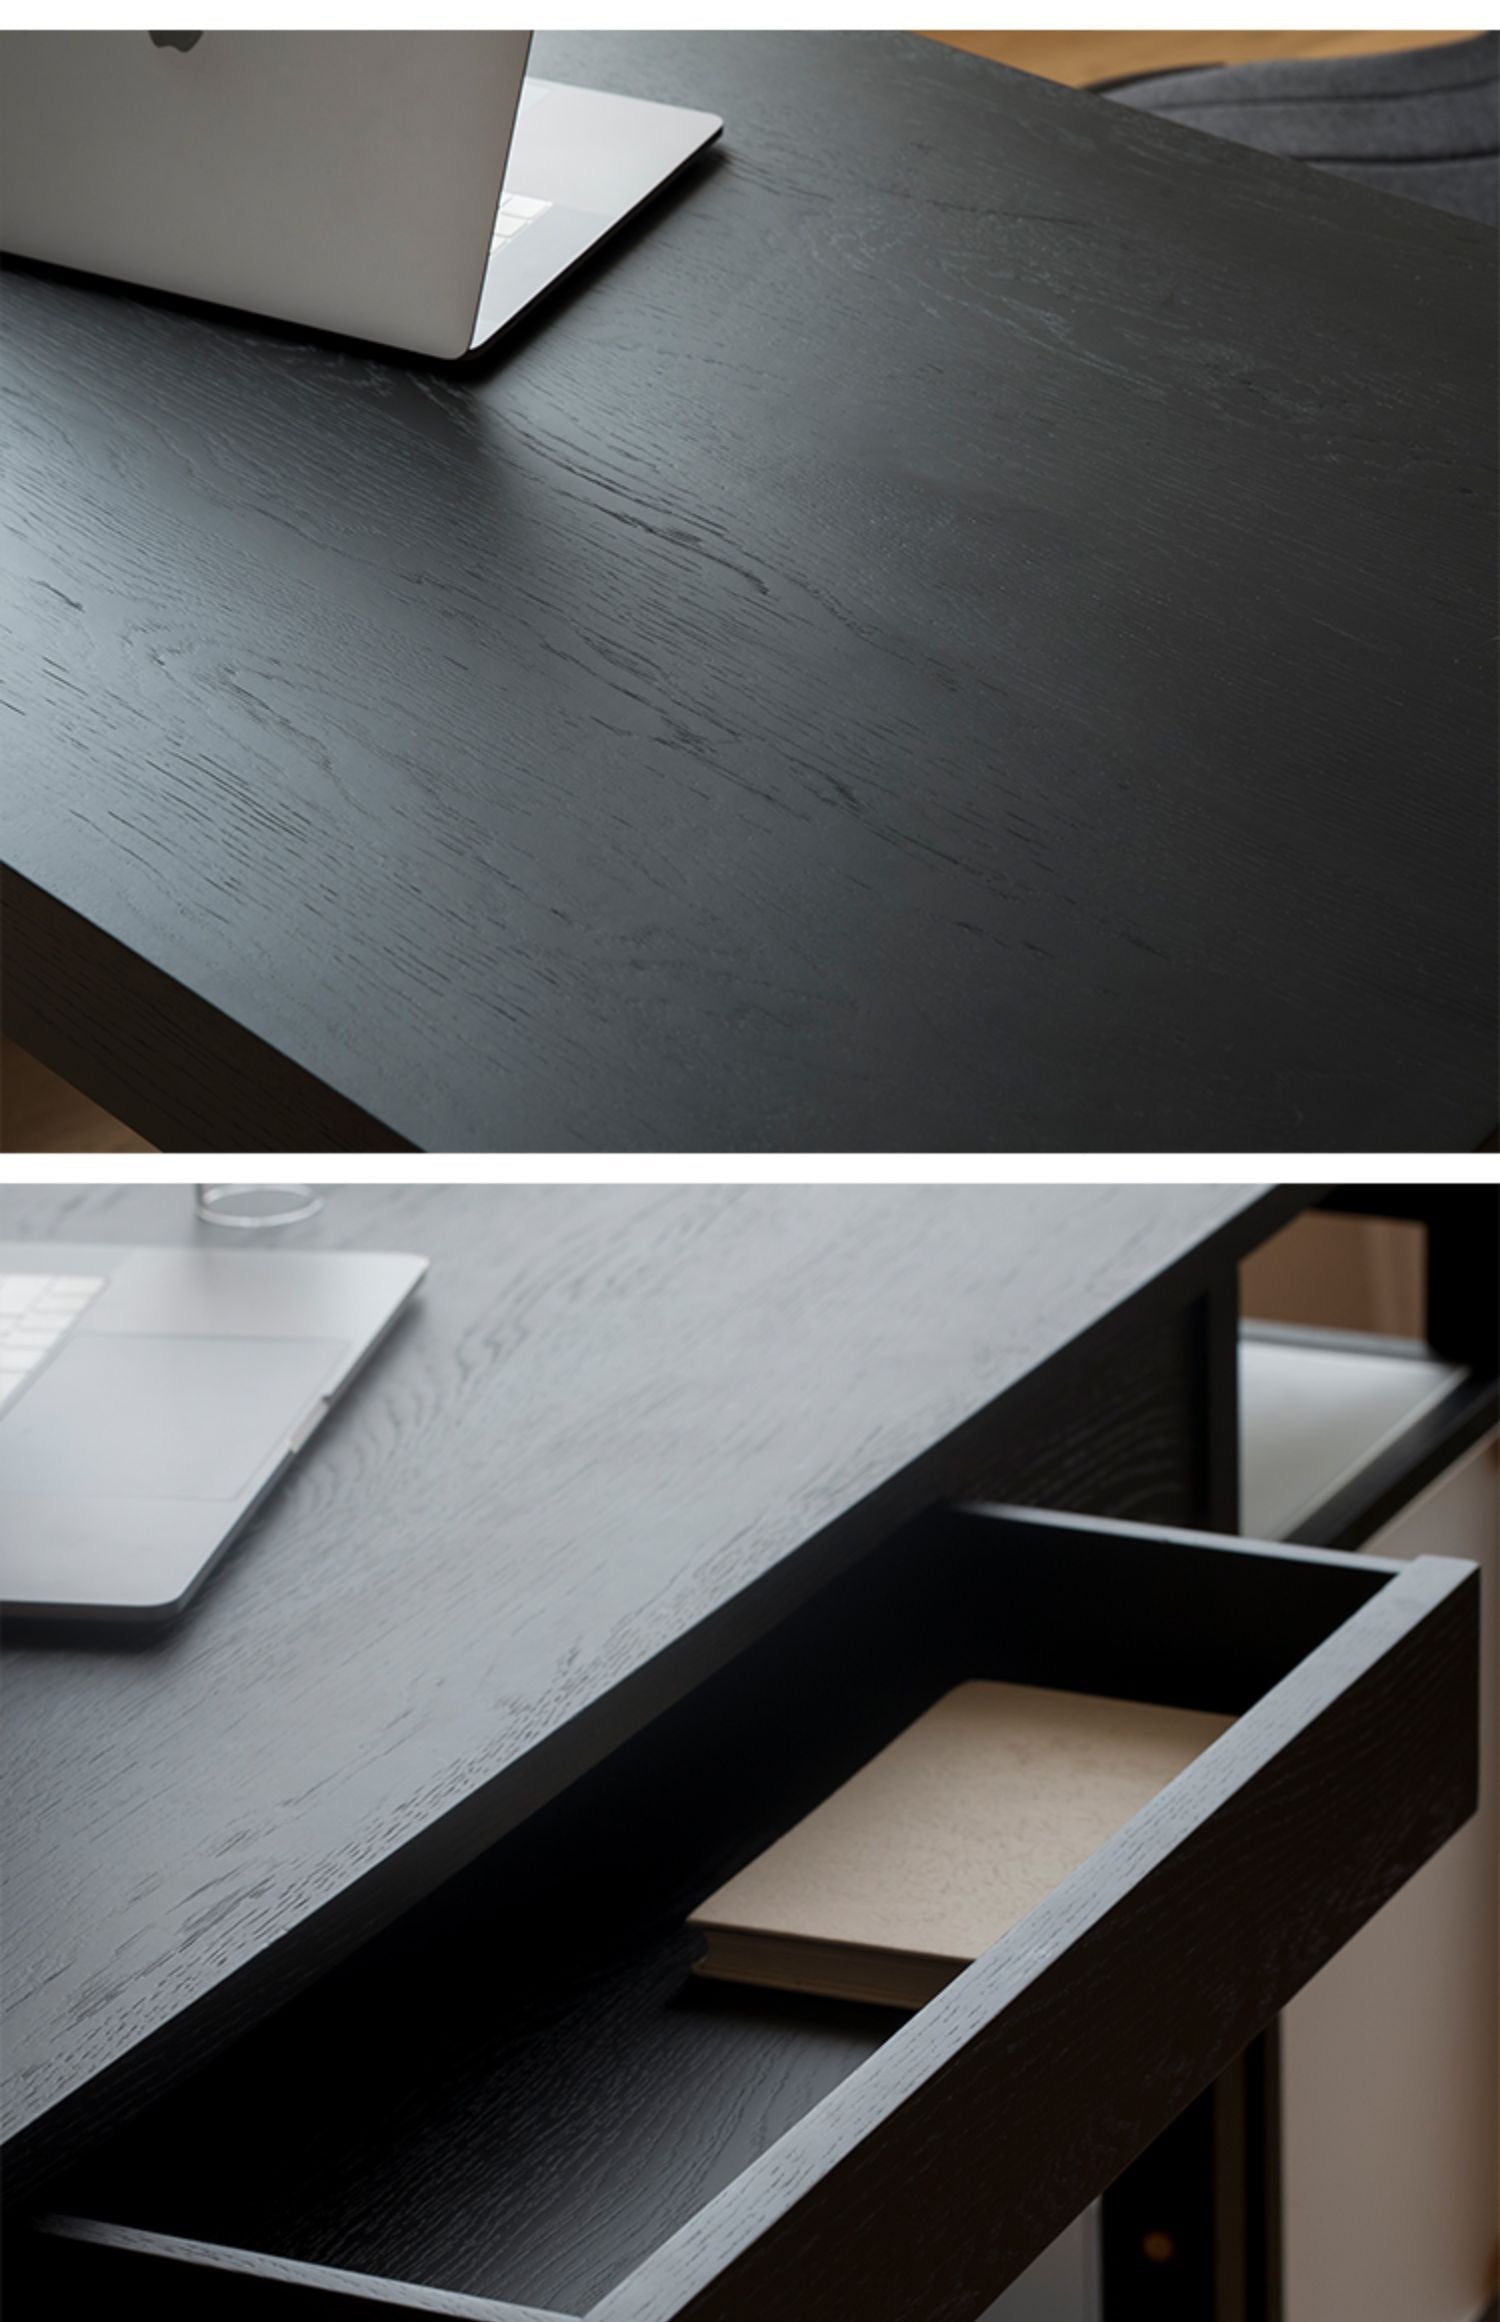 LINES RECTANGULAR DESK Table Ziinlife Modern Design Furniture Hong Kong  